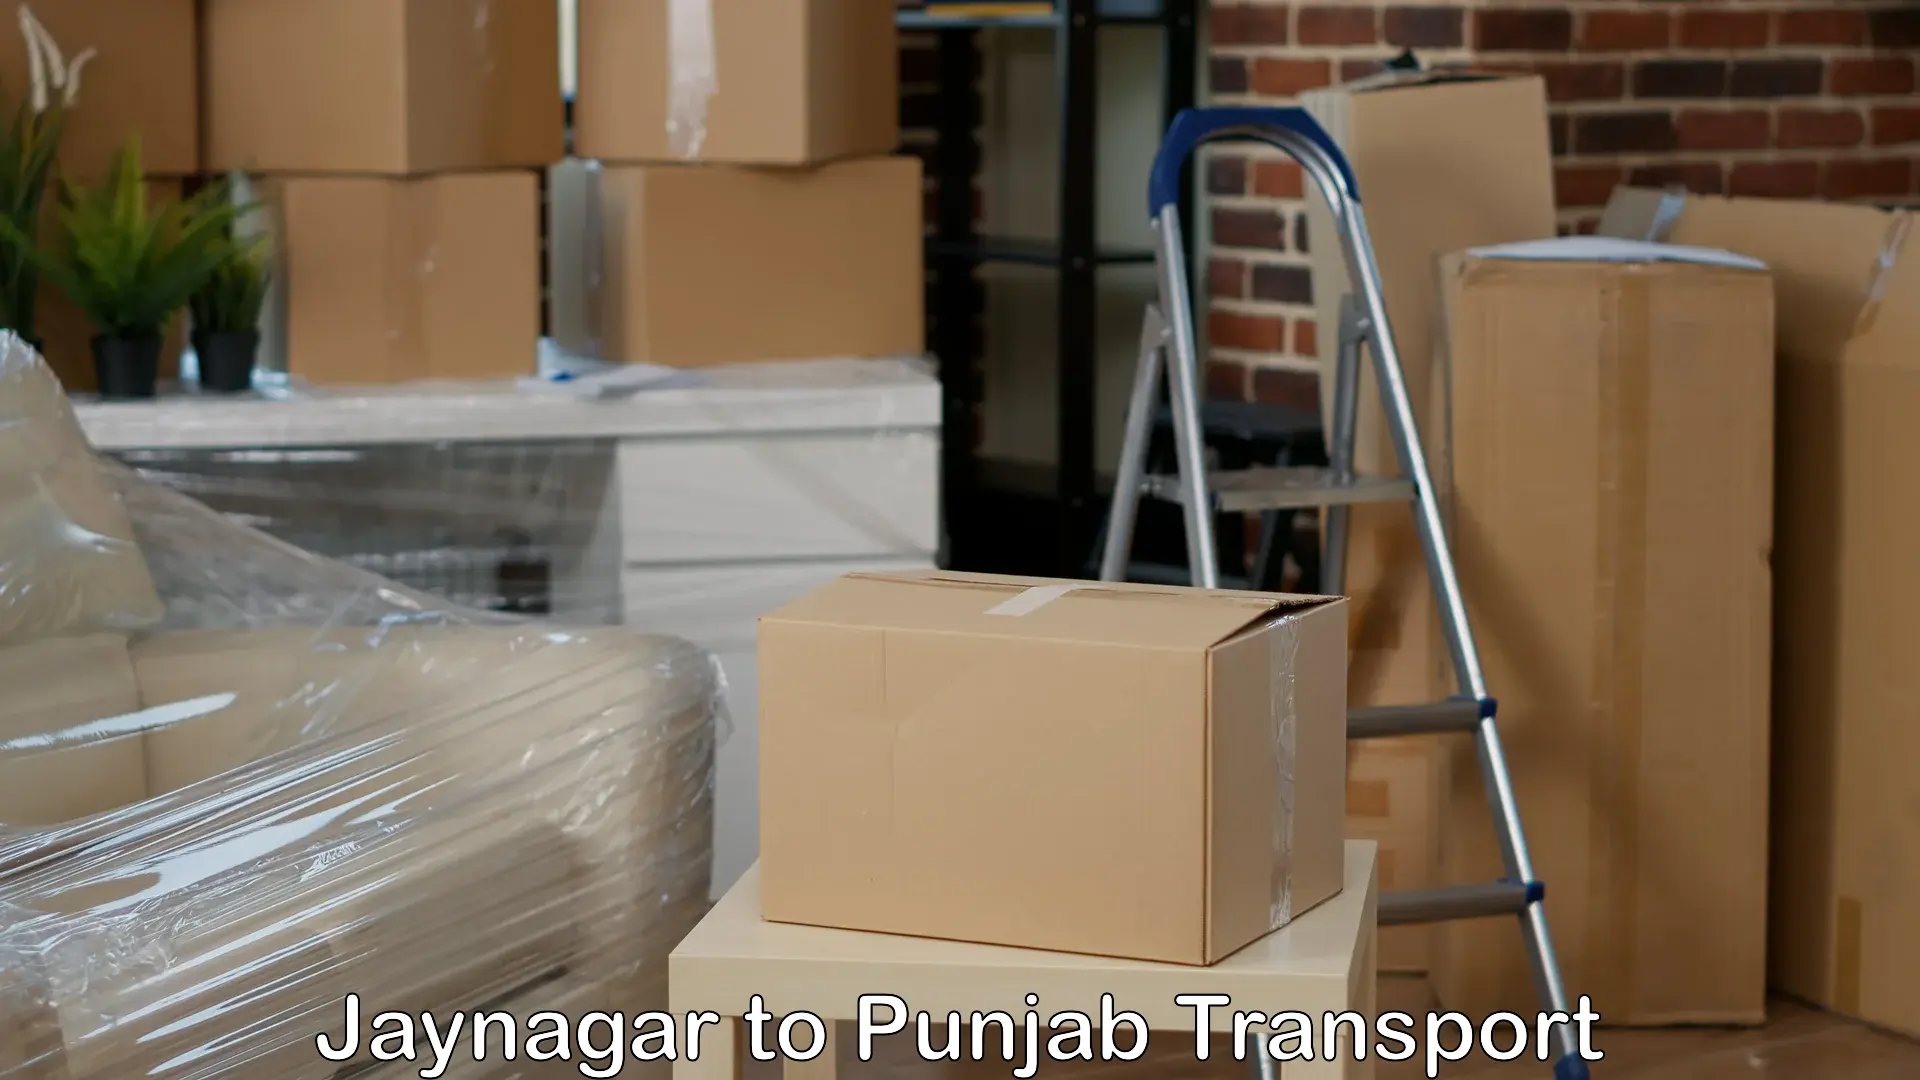 Transport services Jaynagar to Punjab